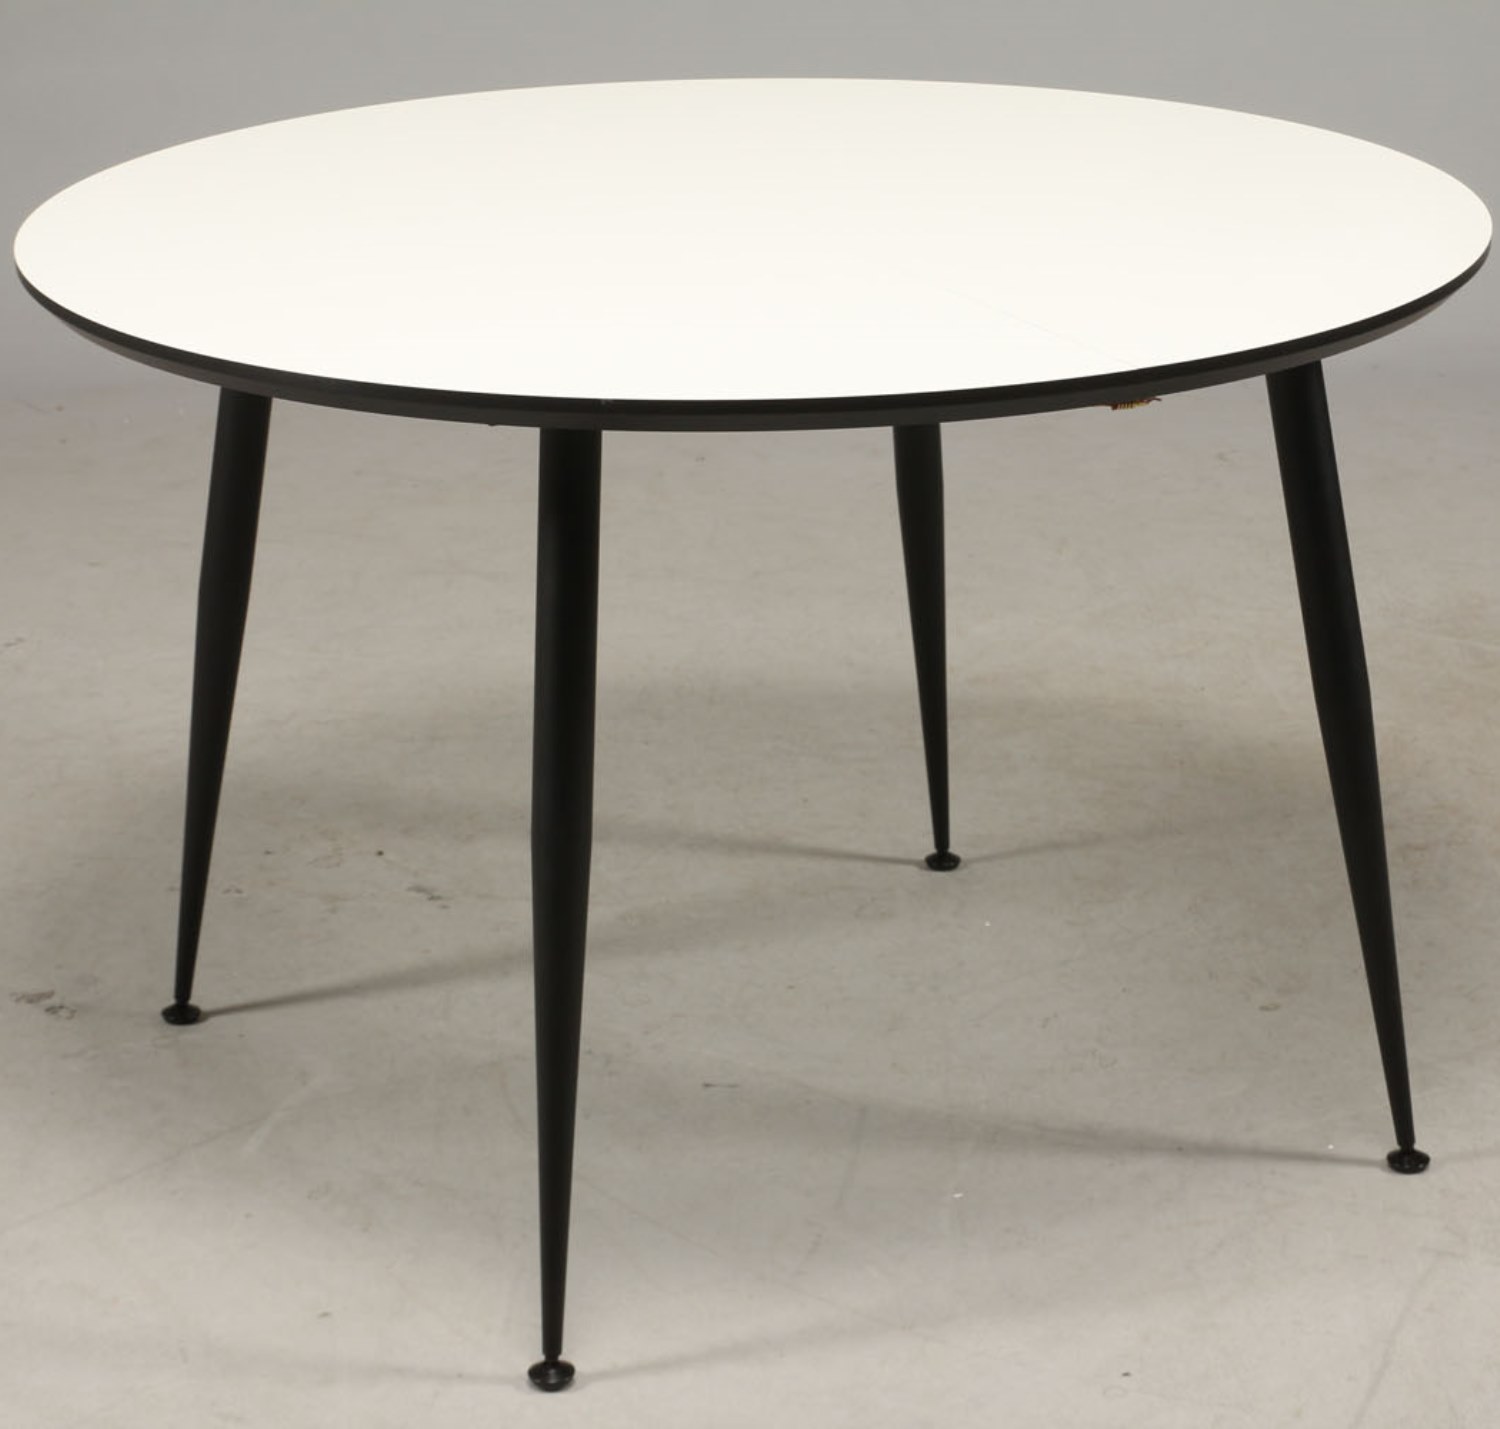 Spisebord, hvid laminat. sorte metal ben, ø 120 - Spiseborde i laminat, finer, malet og linoleum - FURBO Aps